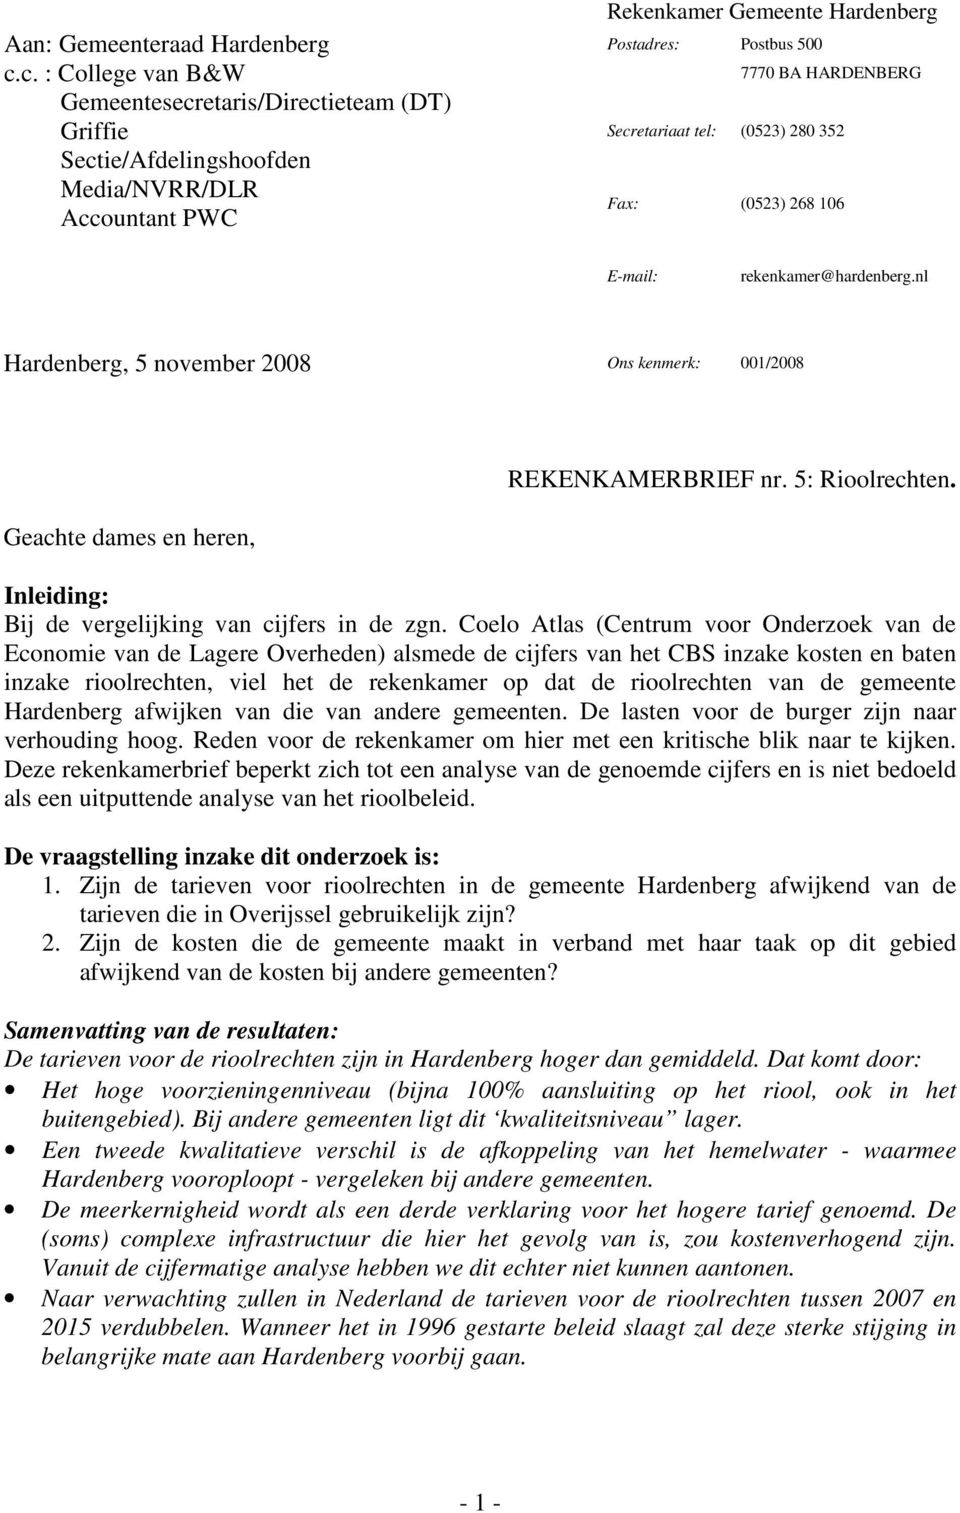 rekenkamer@hardenberg.nl Hardenberg, 5 november 2008 Ons kenmerk: 001/2008 Geachte dames en heren, REKENKAMERBRIEF nr. 5: Rioolrechten. Inleiding: Bij de vergelijking van cijfers in de zgn.